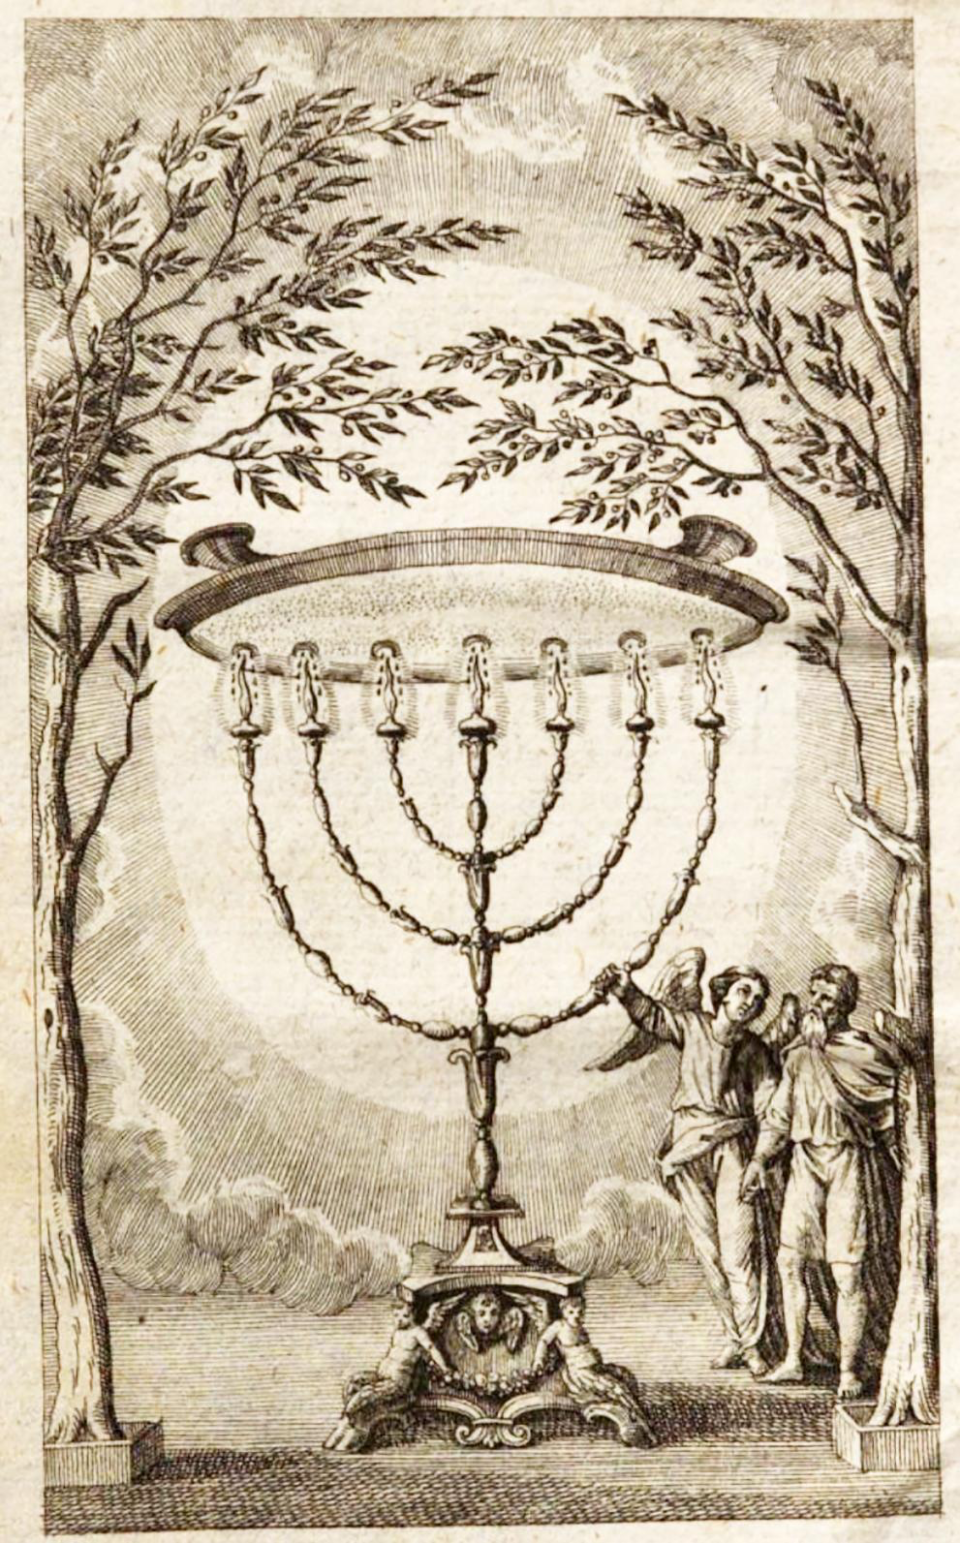 El candelabro secreto ("Perspectiva sobre la magia", Karl von Eckhartshausen)